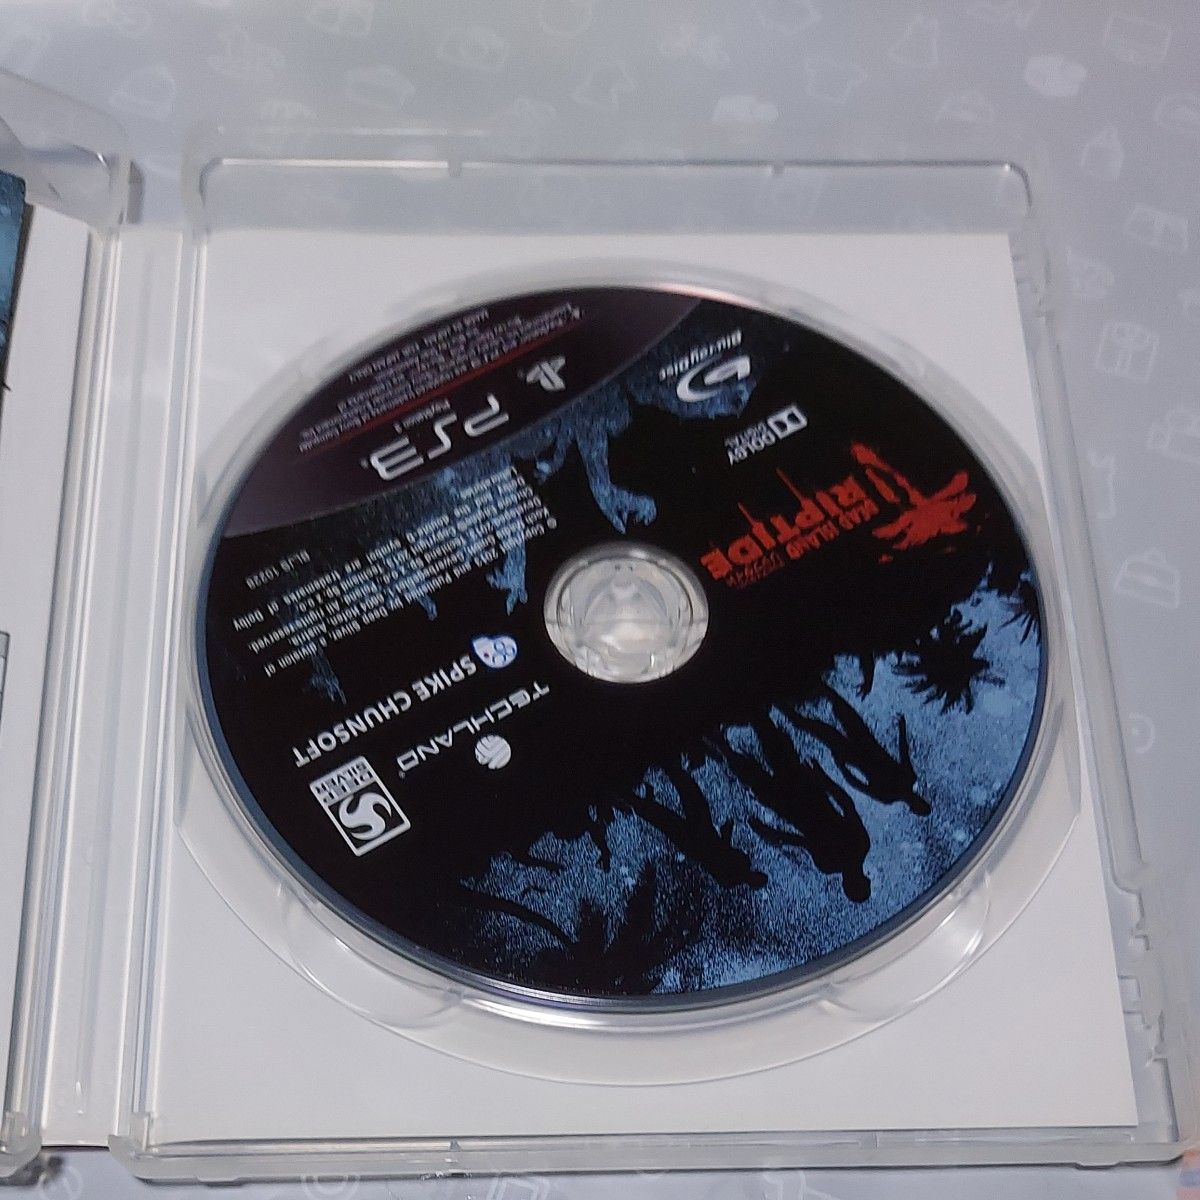 【PS3】 Dead Island： Riptide （デッドアイランド リップタイド）